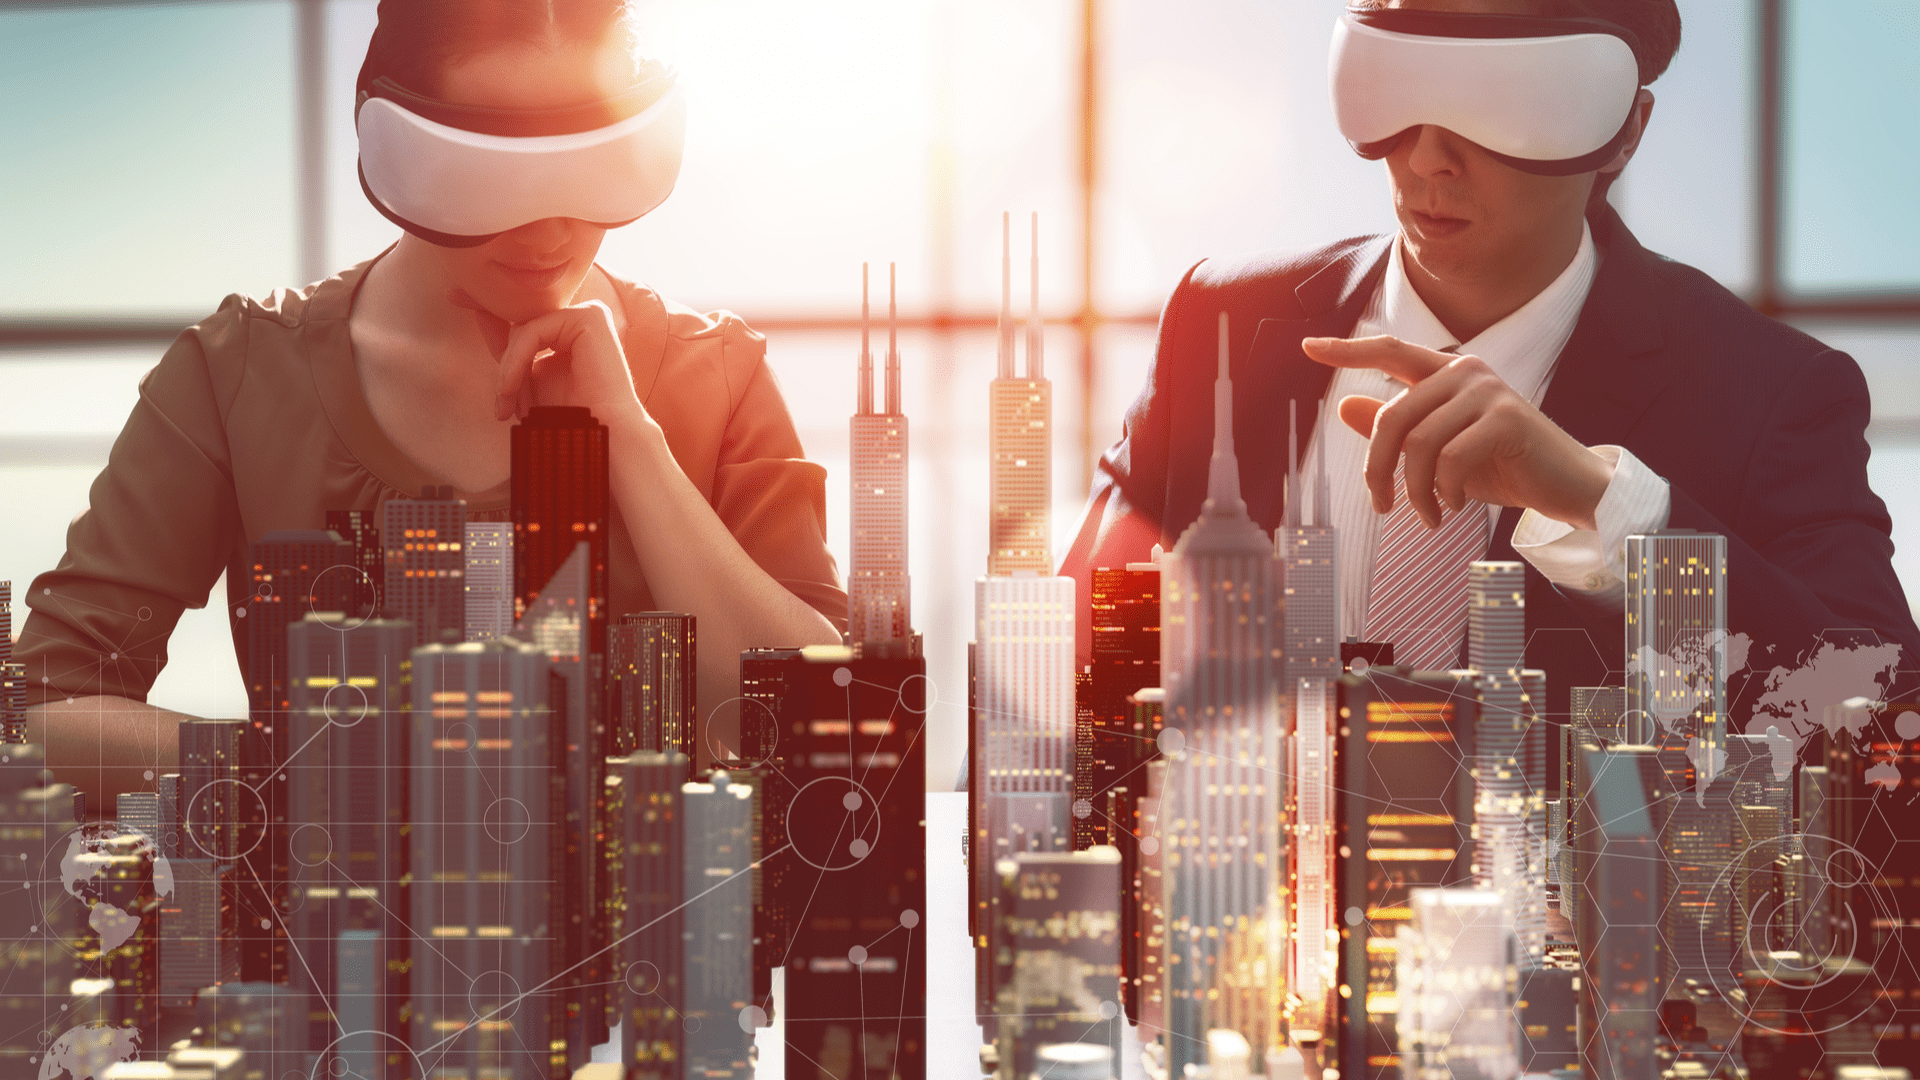 Holographic meetings e VR meetings: o novo momento da comunicação